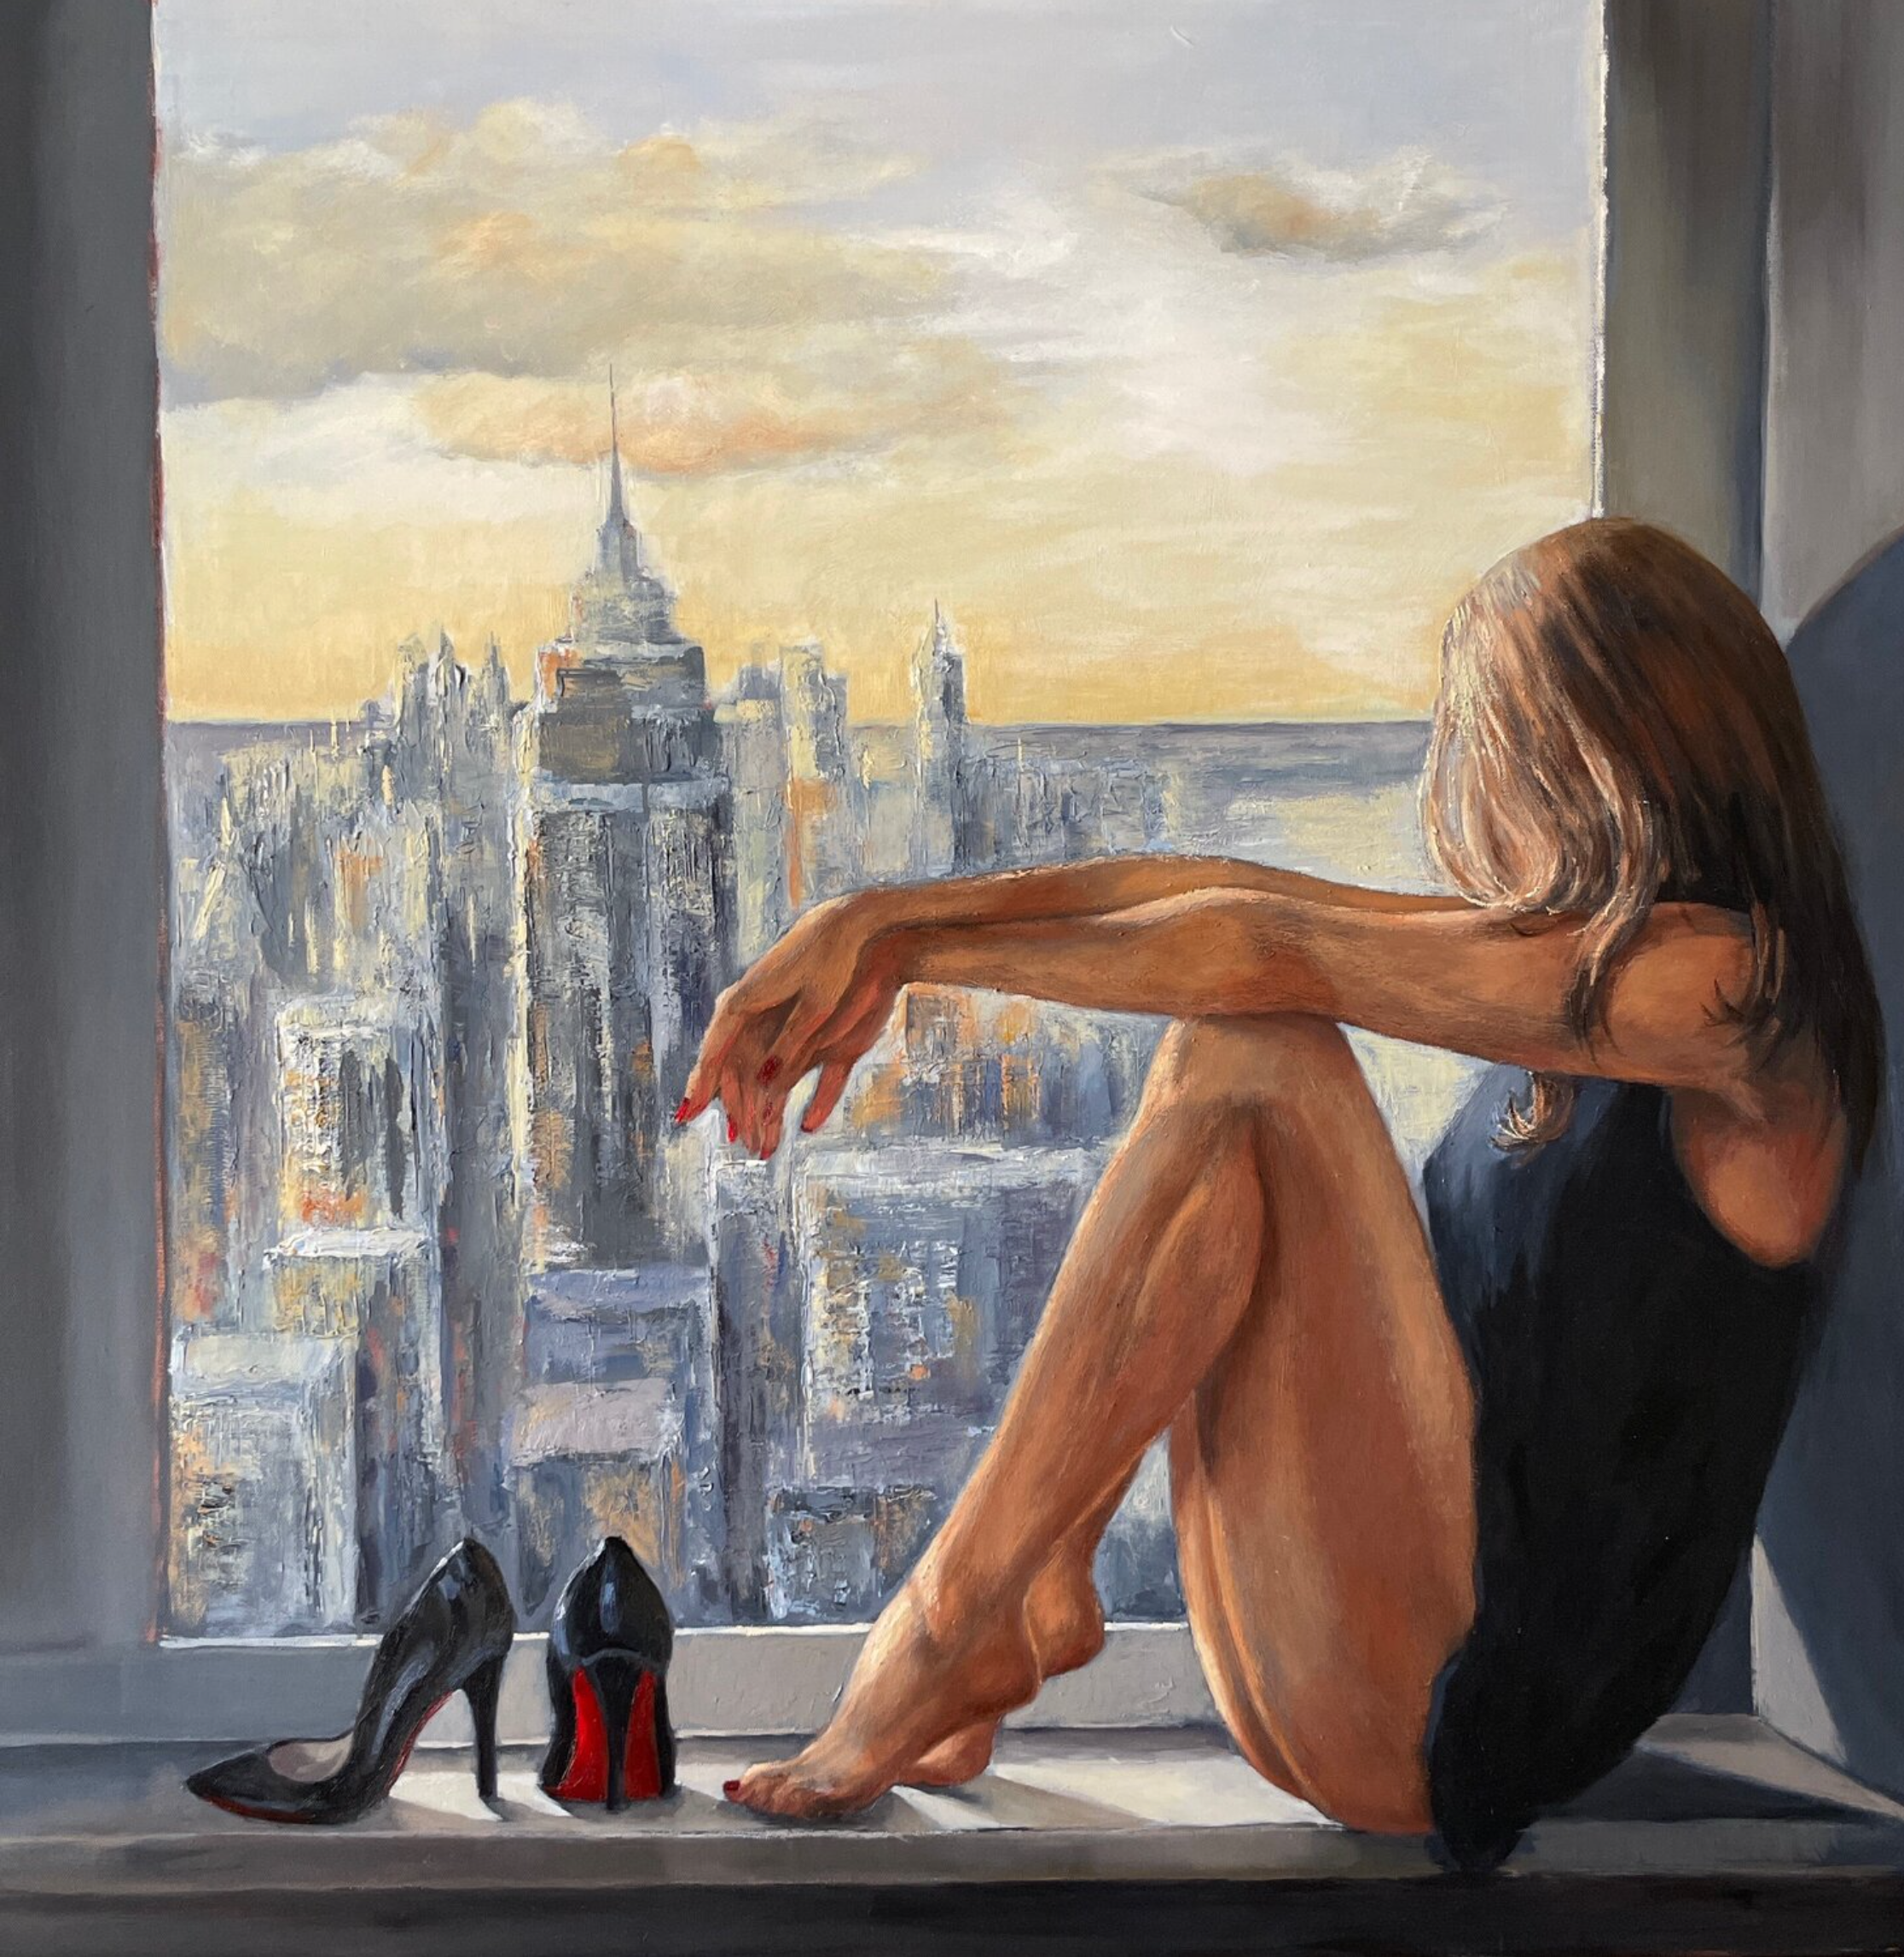 安娜-雷兹尼科娃的 "新的一天 "画作展示了一个坐在曼哈顿窗台上的漂亮女人。